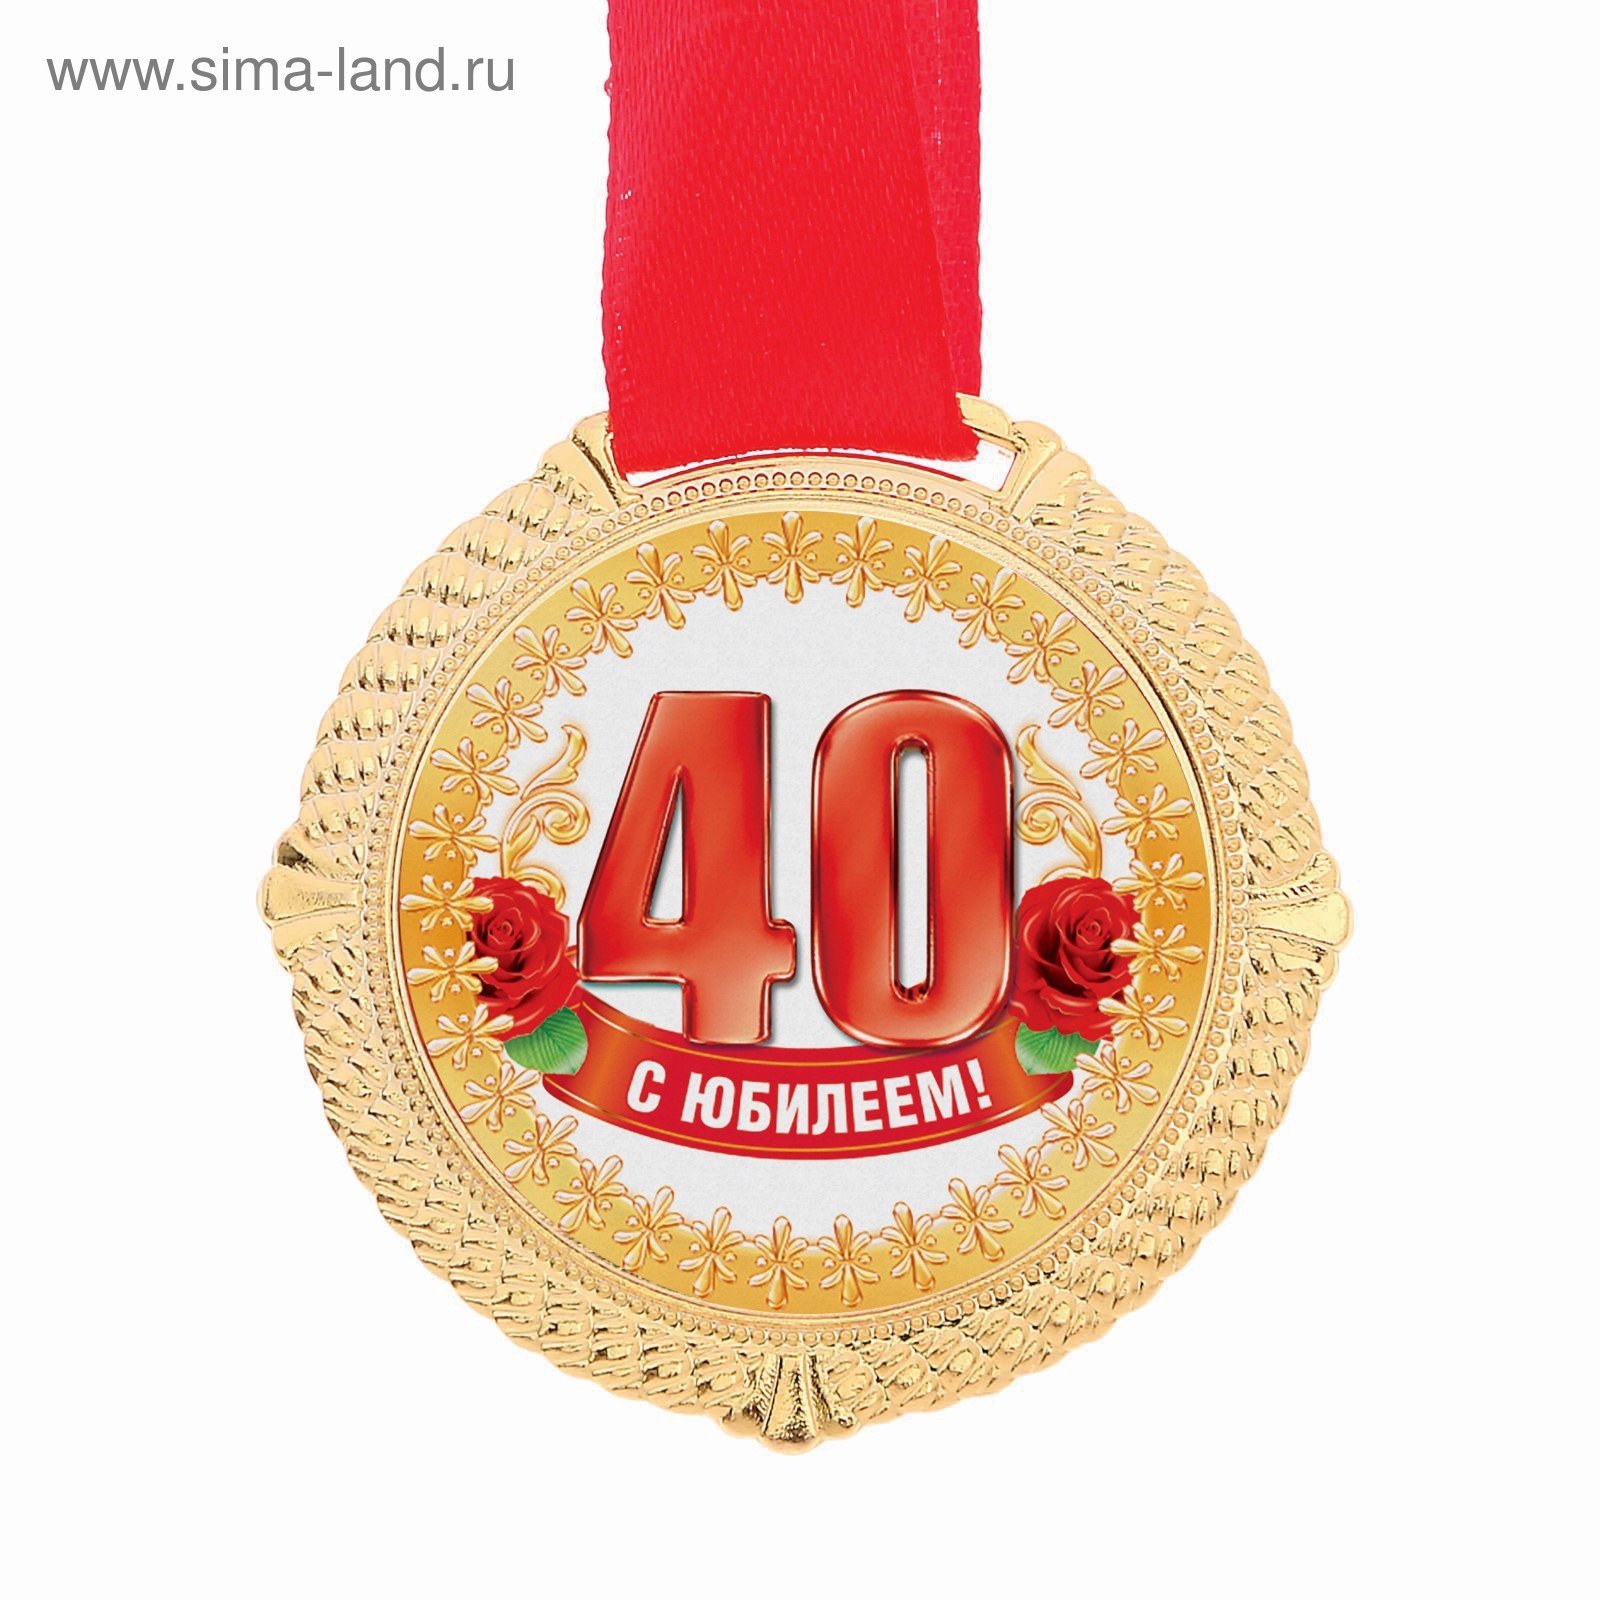 Мужу 40 юбилей. Медаль 40 лет юбилей. Медаль к 40 летнему юбилею. С юбилеем 40 лет. Поздравления с днём рождения 40 лет.